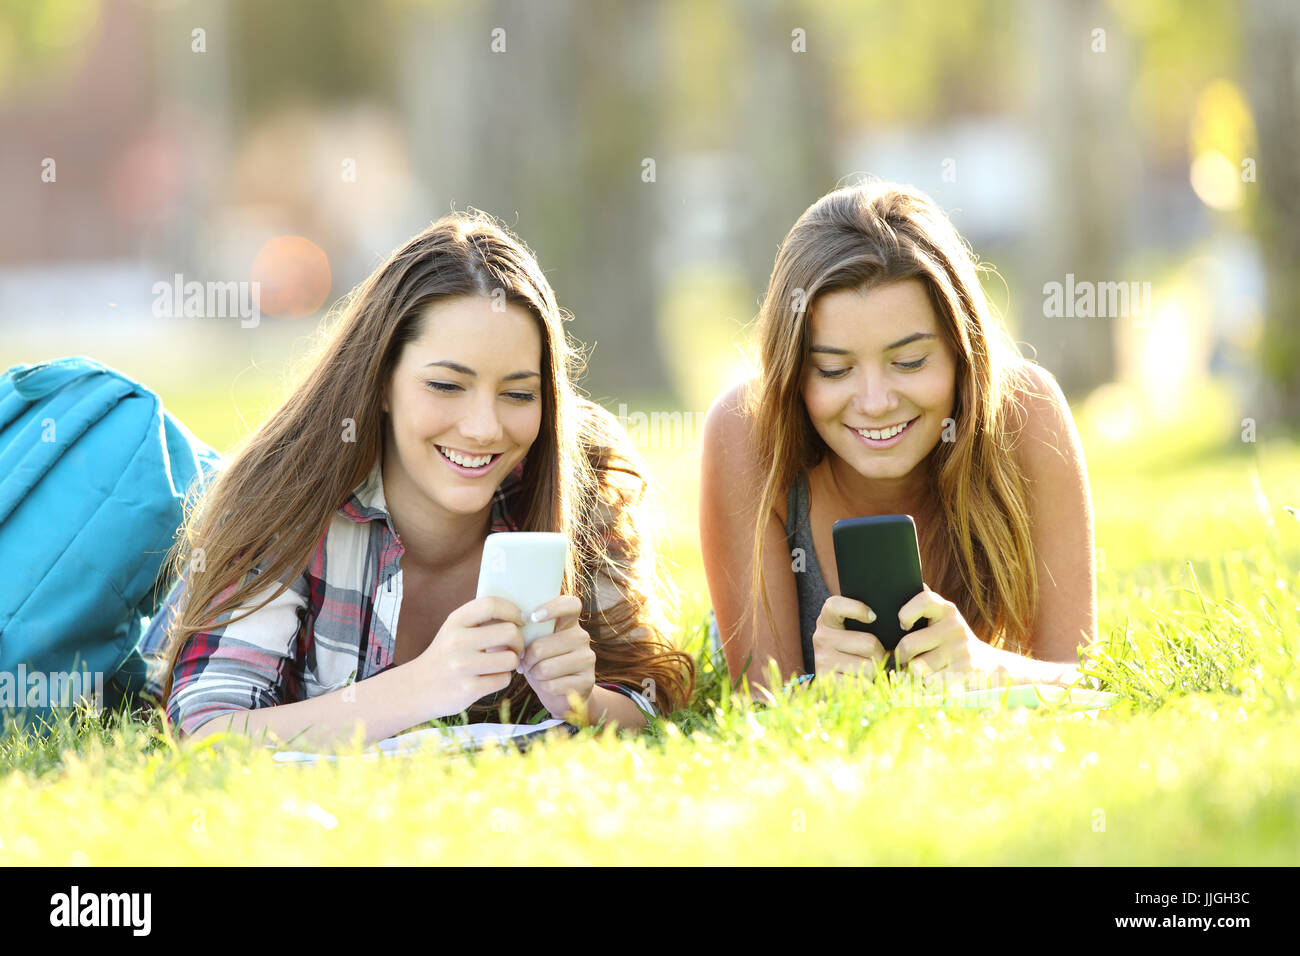 Vorderansicht von zwei Studenten SMS in ihren Smartphones liegen auf dem Rasen in einem park Stockfoto